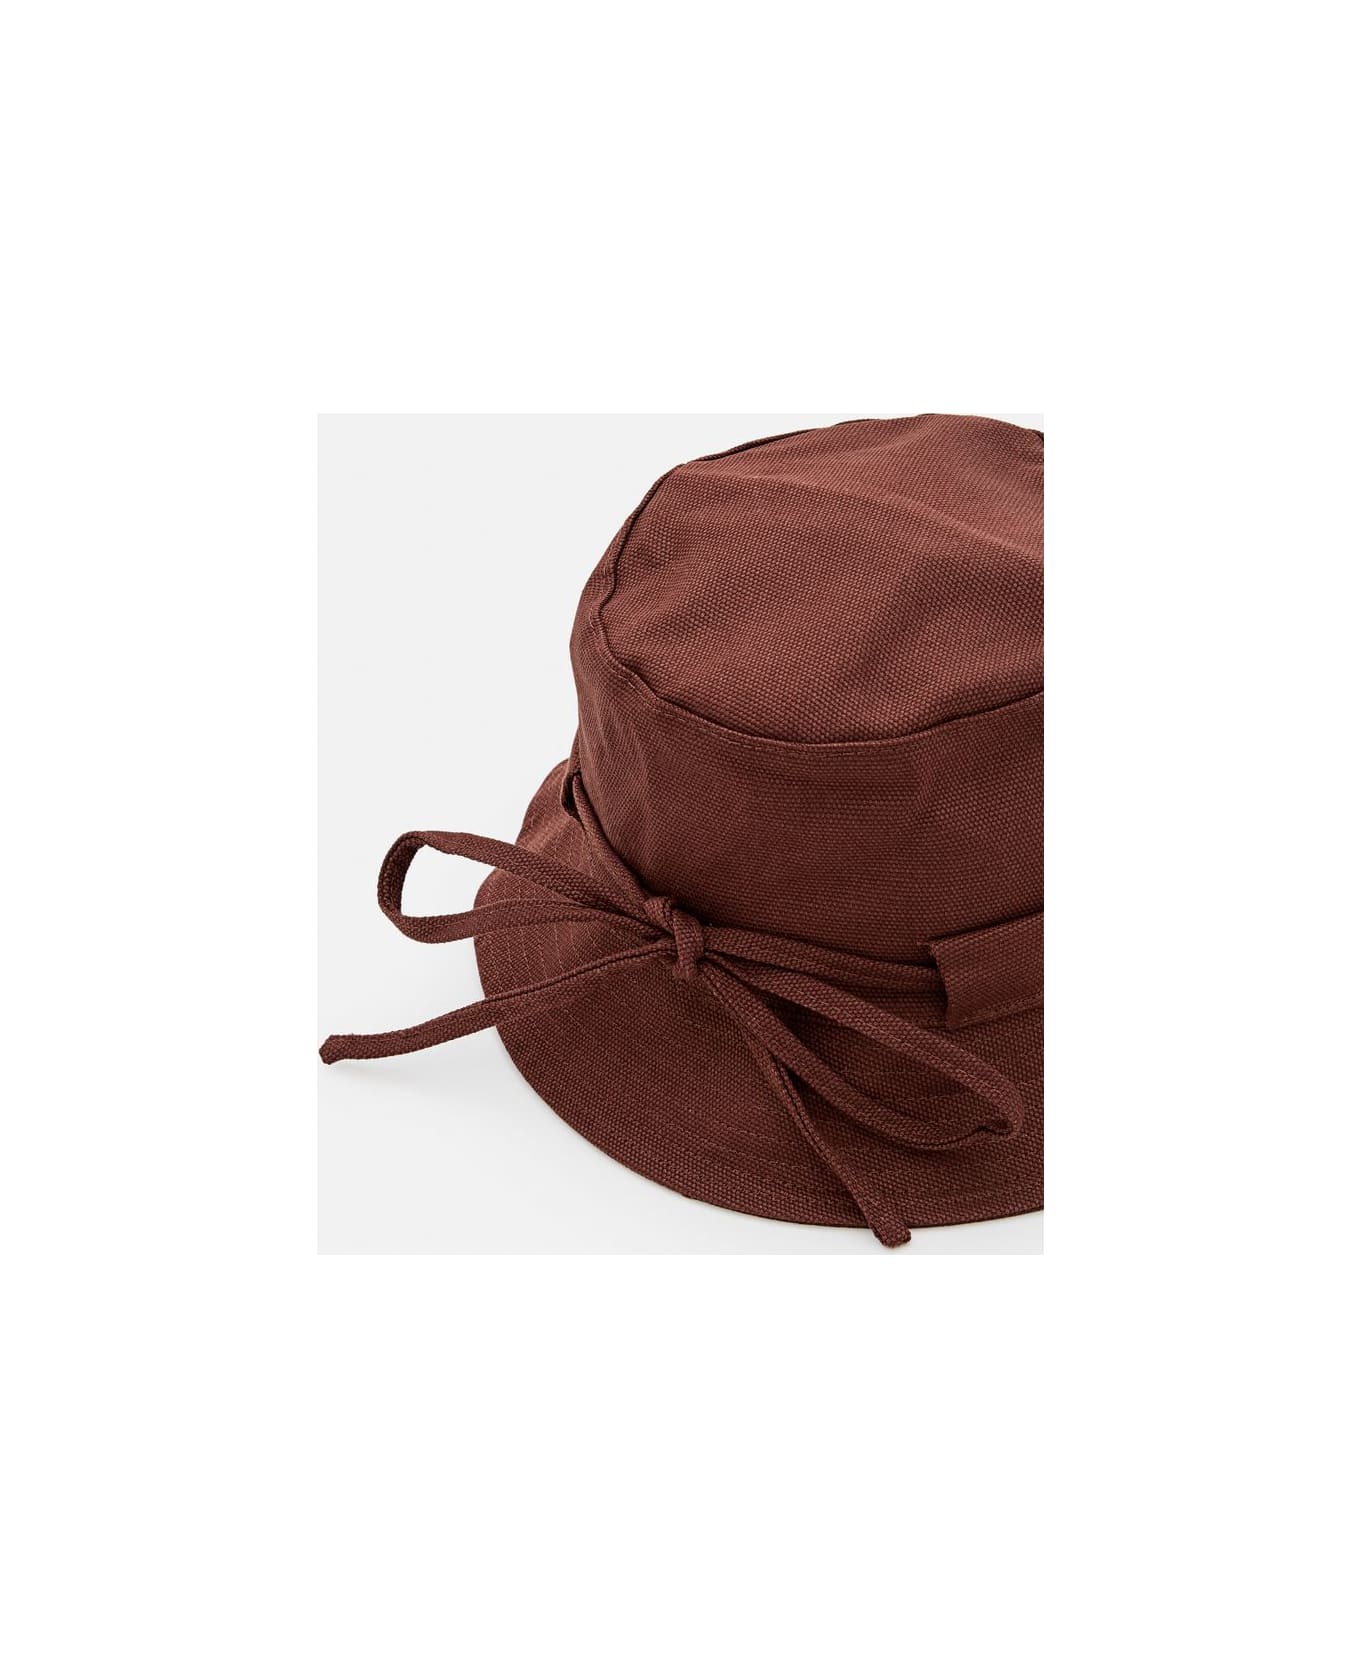 Jacquemus Le Bob Gadjo Cotton Bucket Hat - Brown 帽子